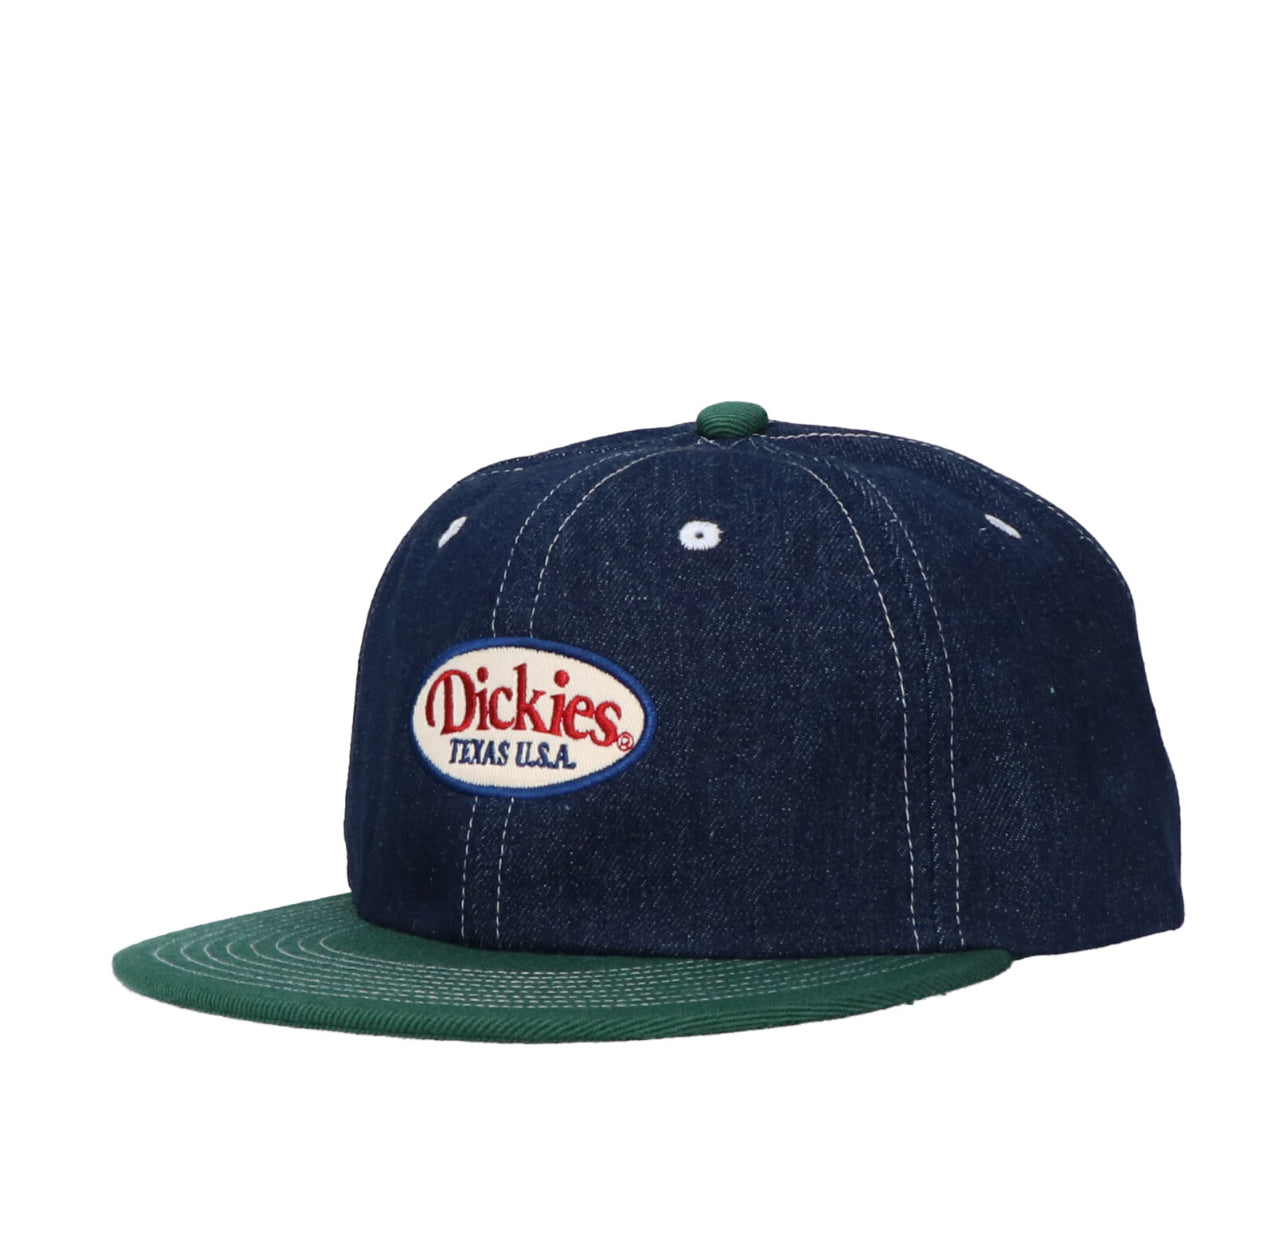 Dickies baseball cap